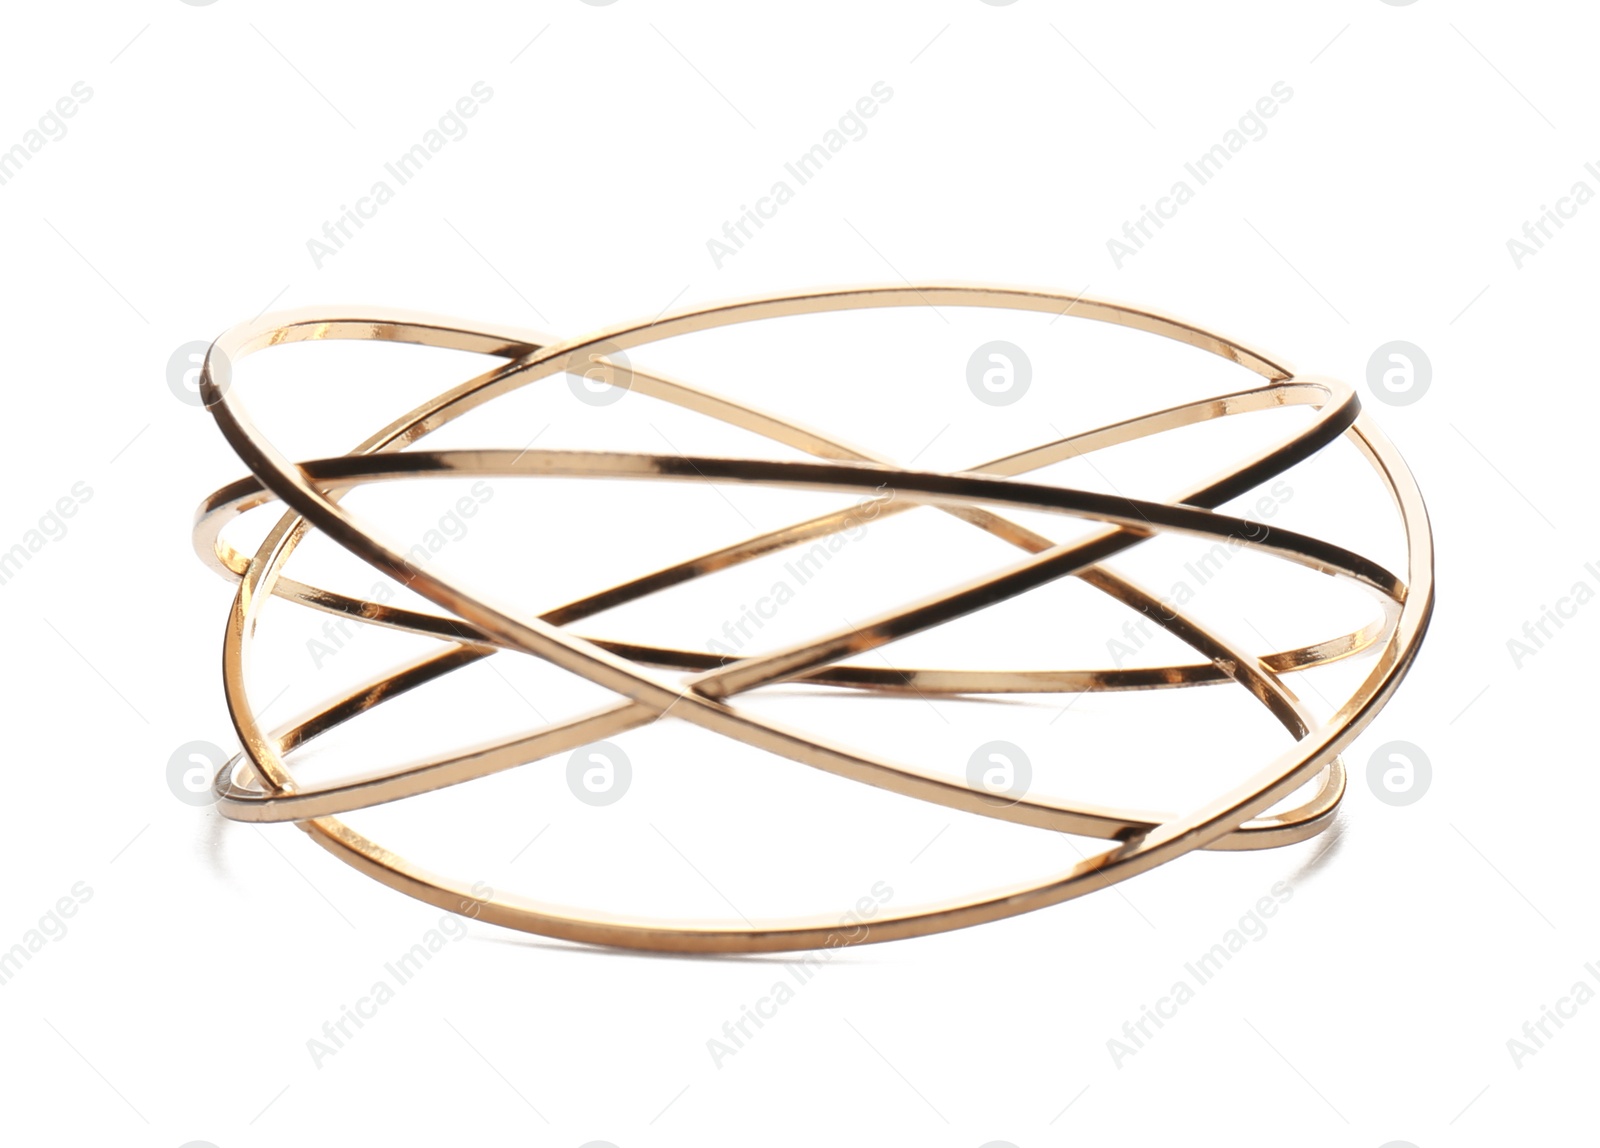 Photo of Stylish golden bracelet isolated on white. Fashionable accessory